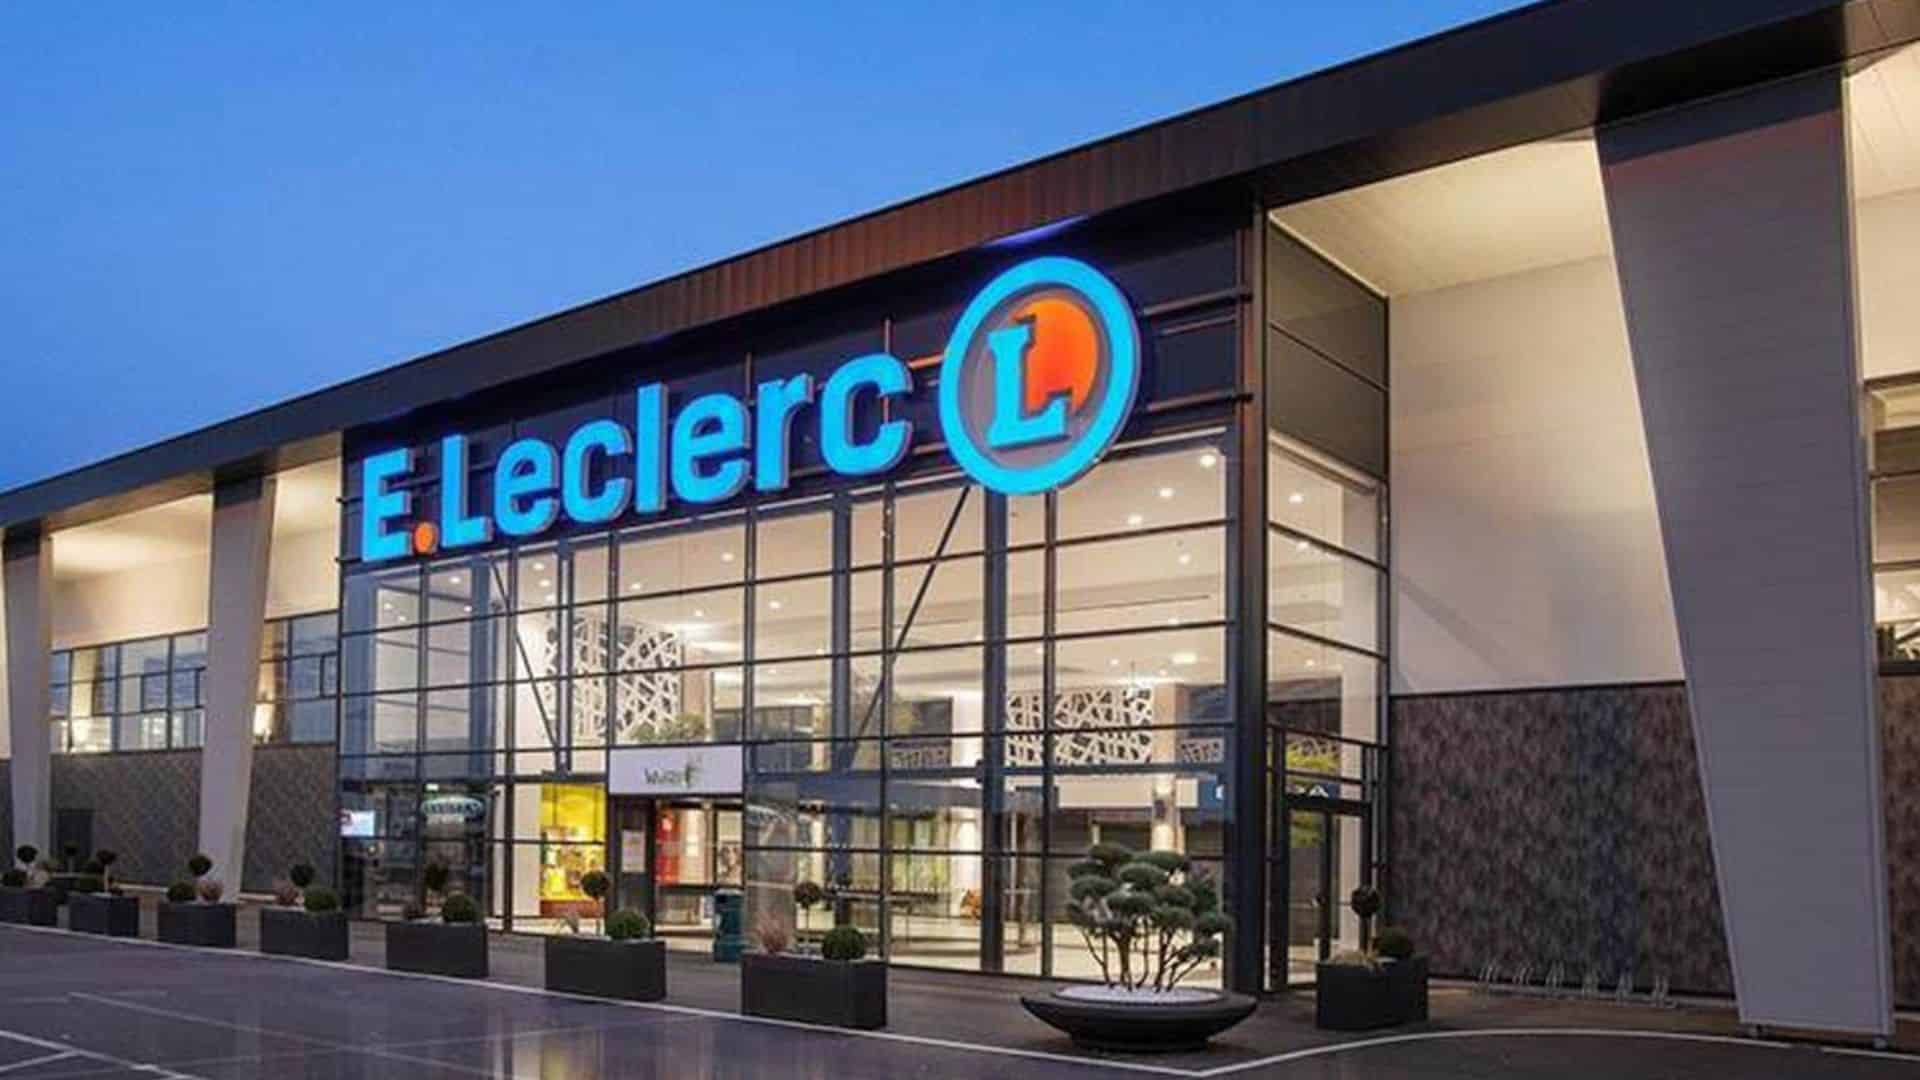 Leclerc : le meilleur jour pour payer vos courses moins cher